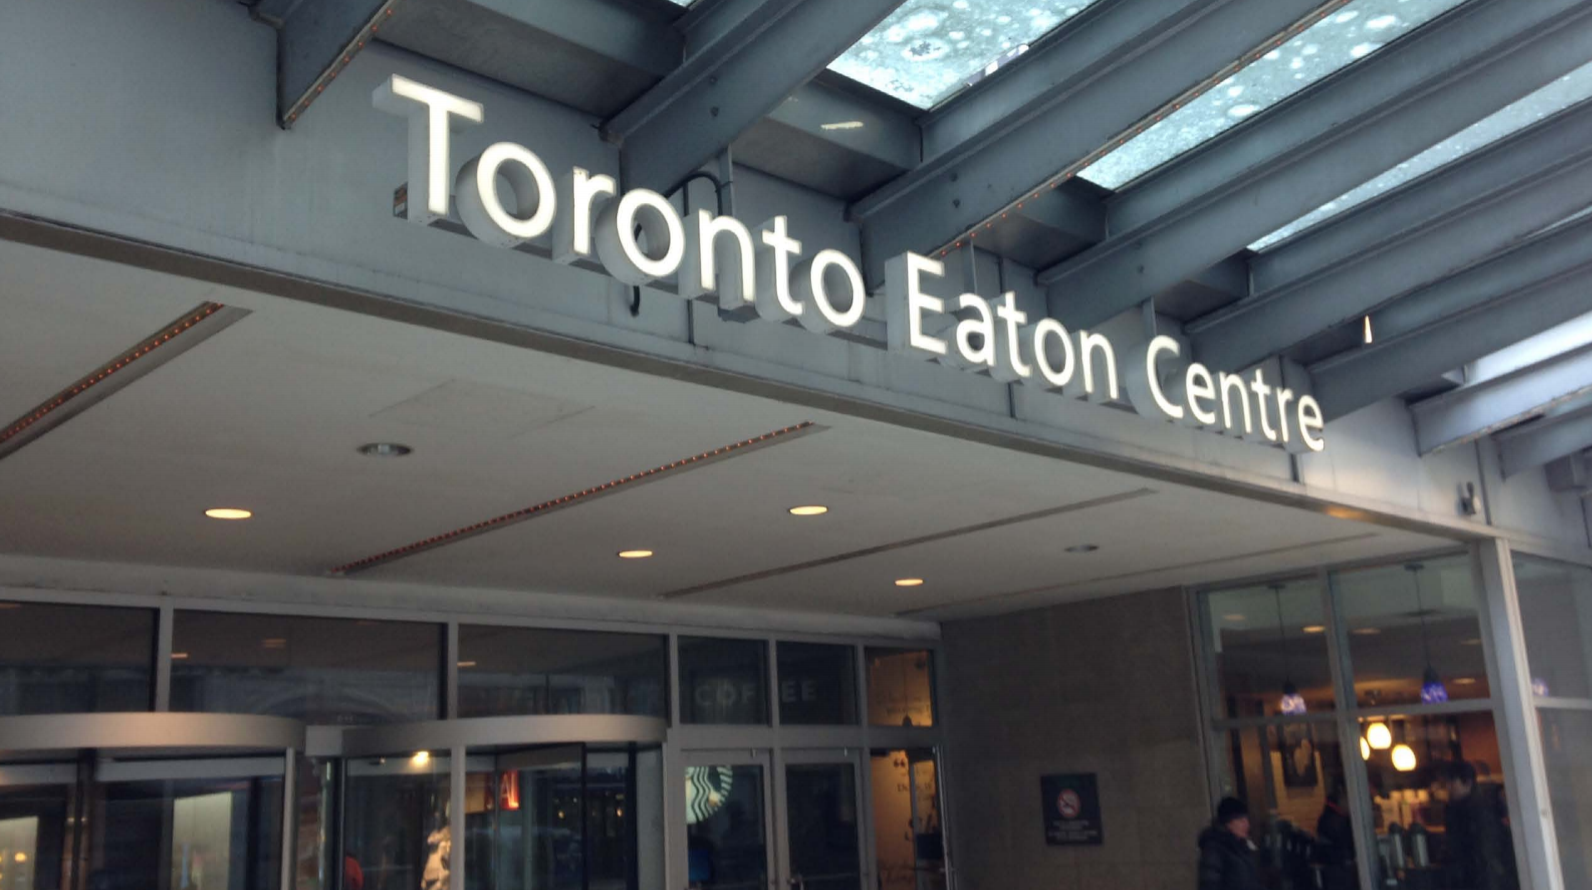 Ontario Pipe Lining - Toronto Eaton Centre